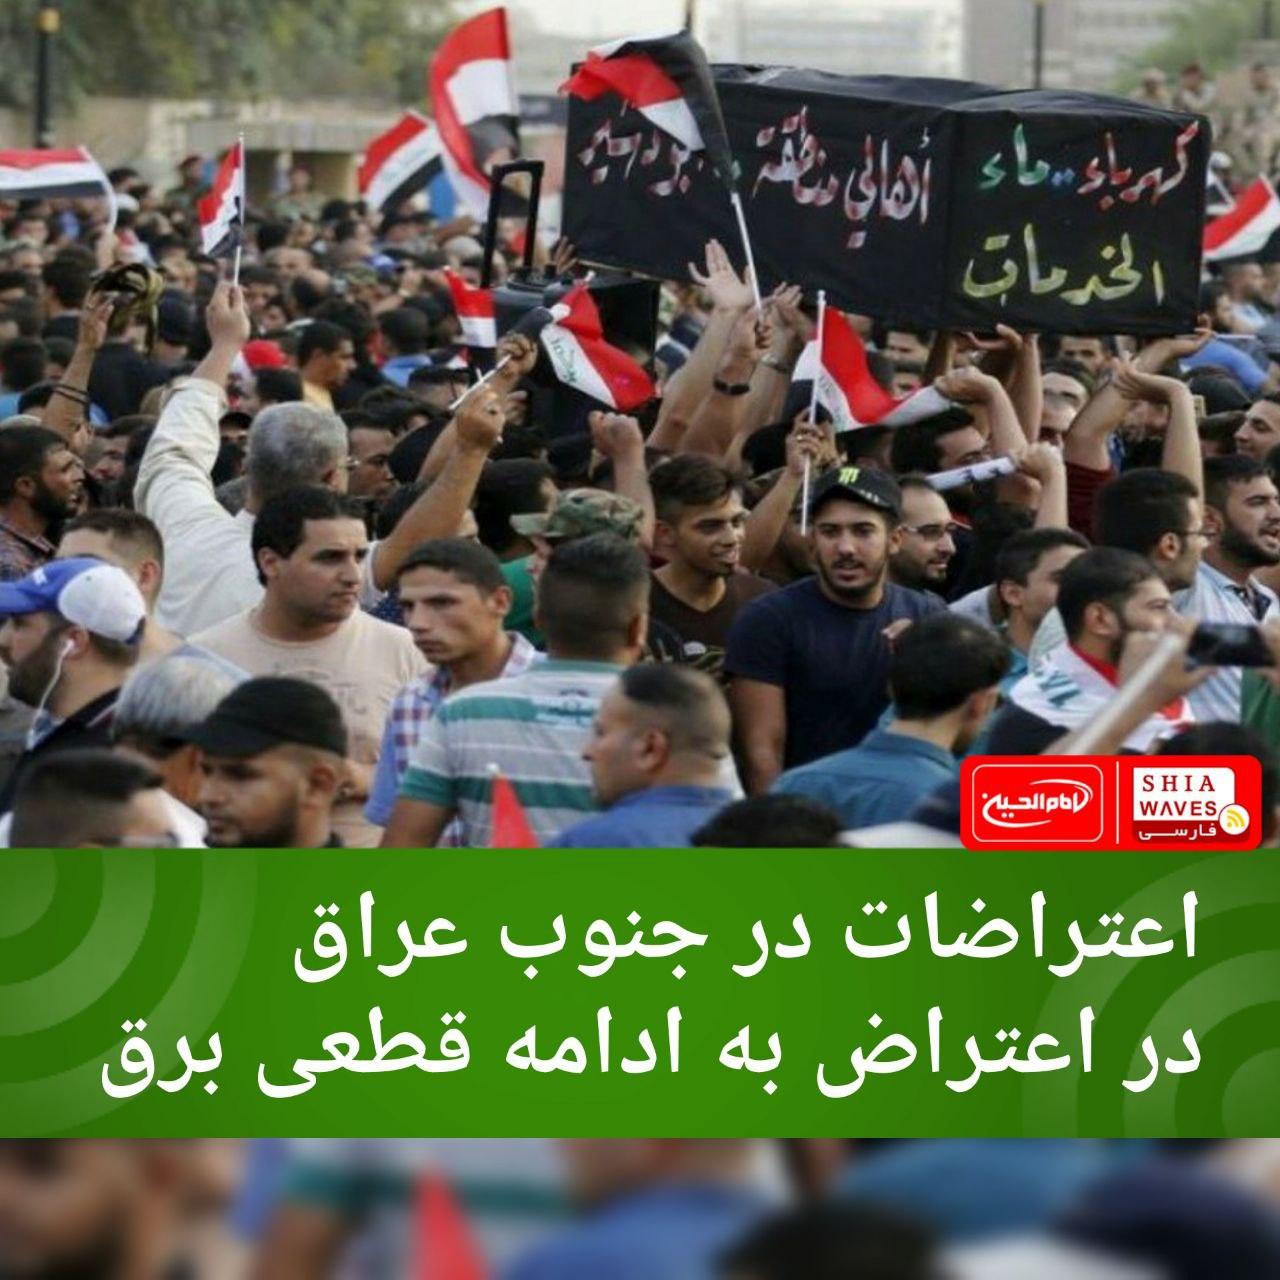 تصویر اعتراضات در جنوب عراق در اعتراض به ادامه قطعی برق